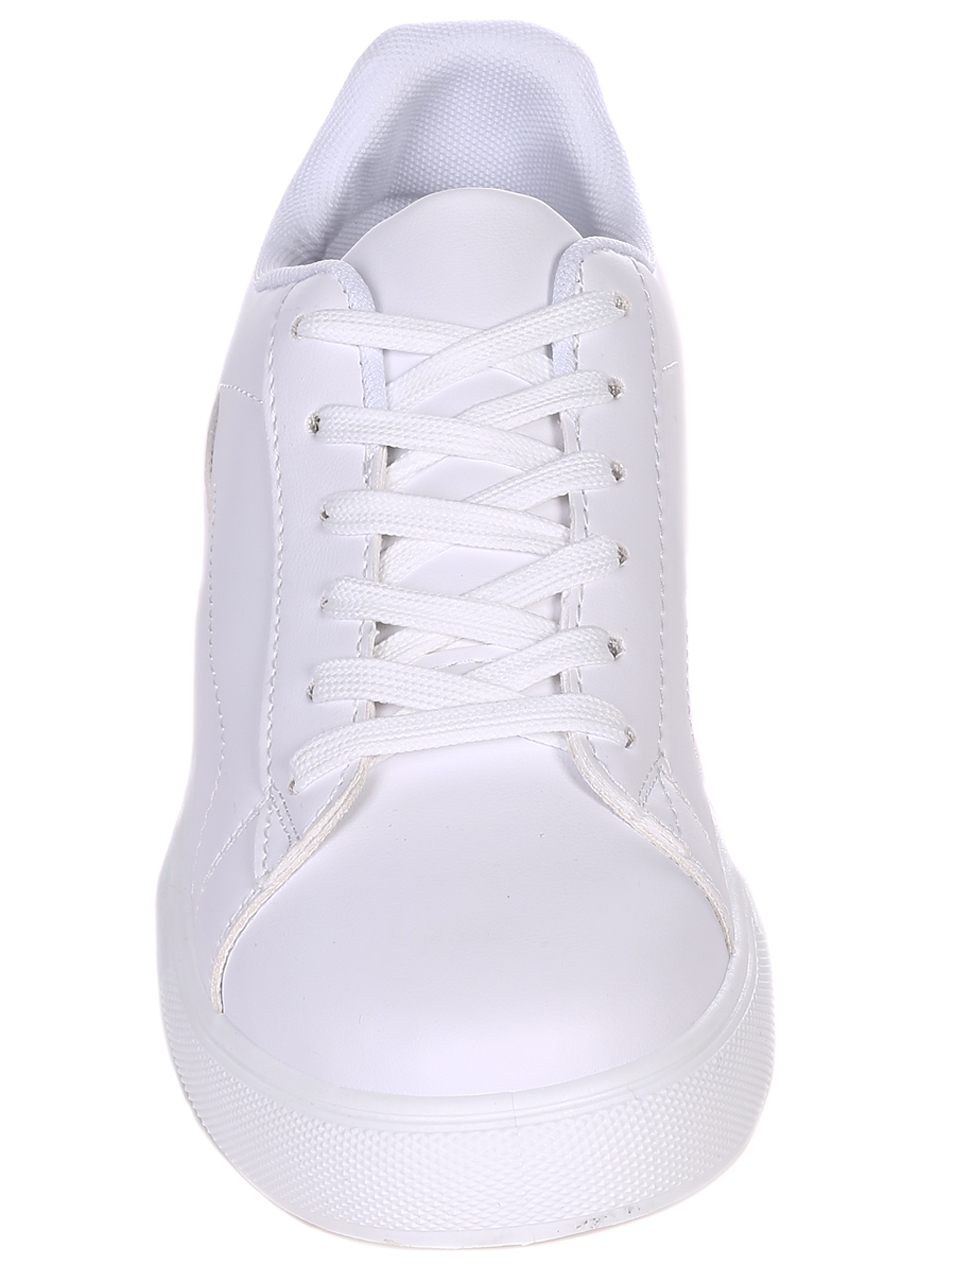 Ежедневни мъжки обувки в бяло 7U-22010 white